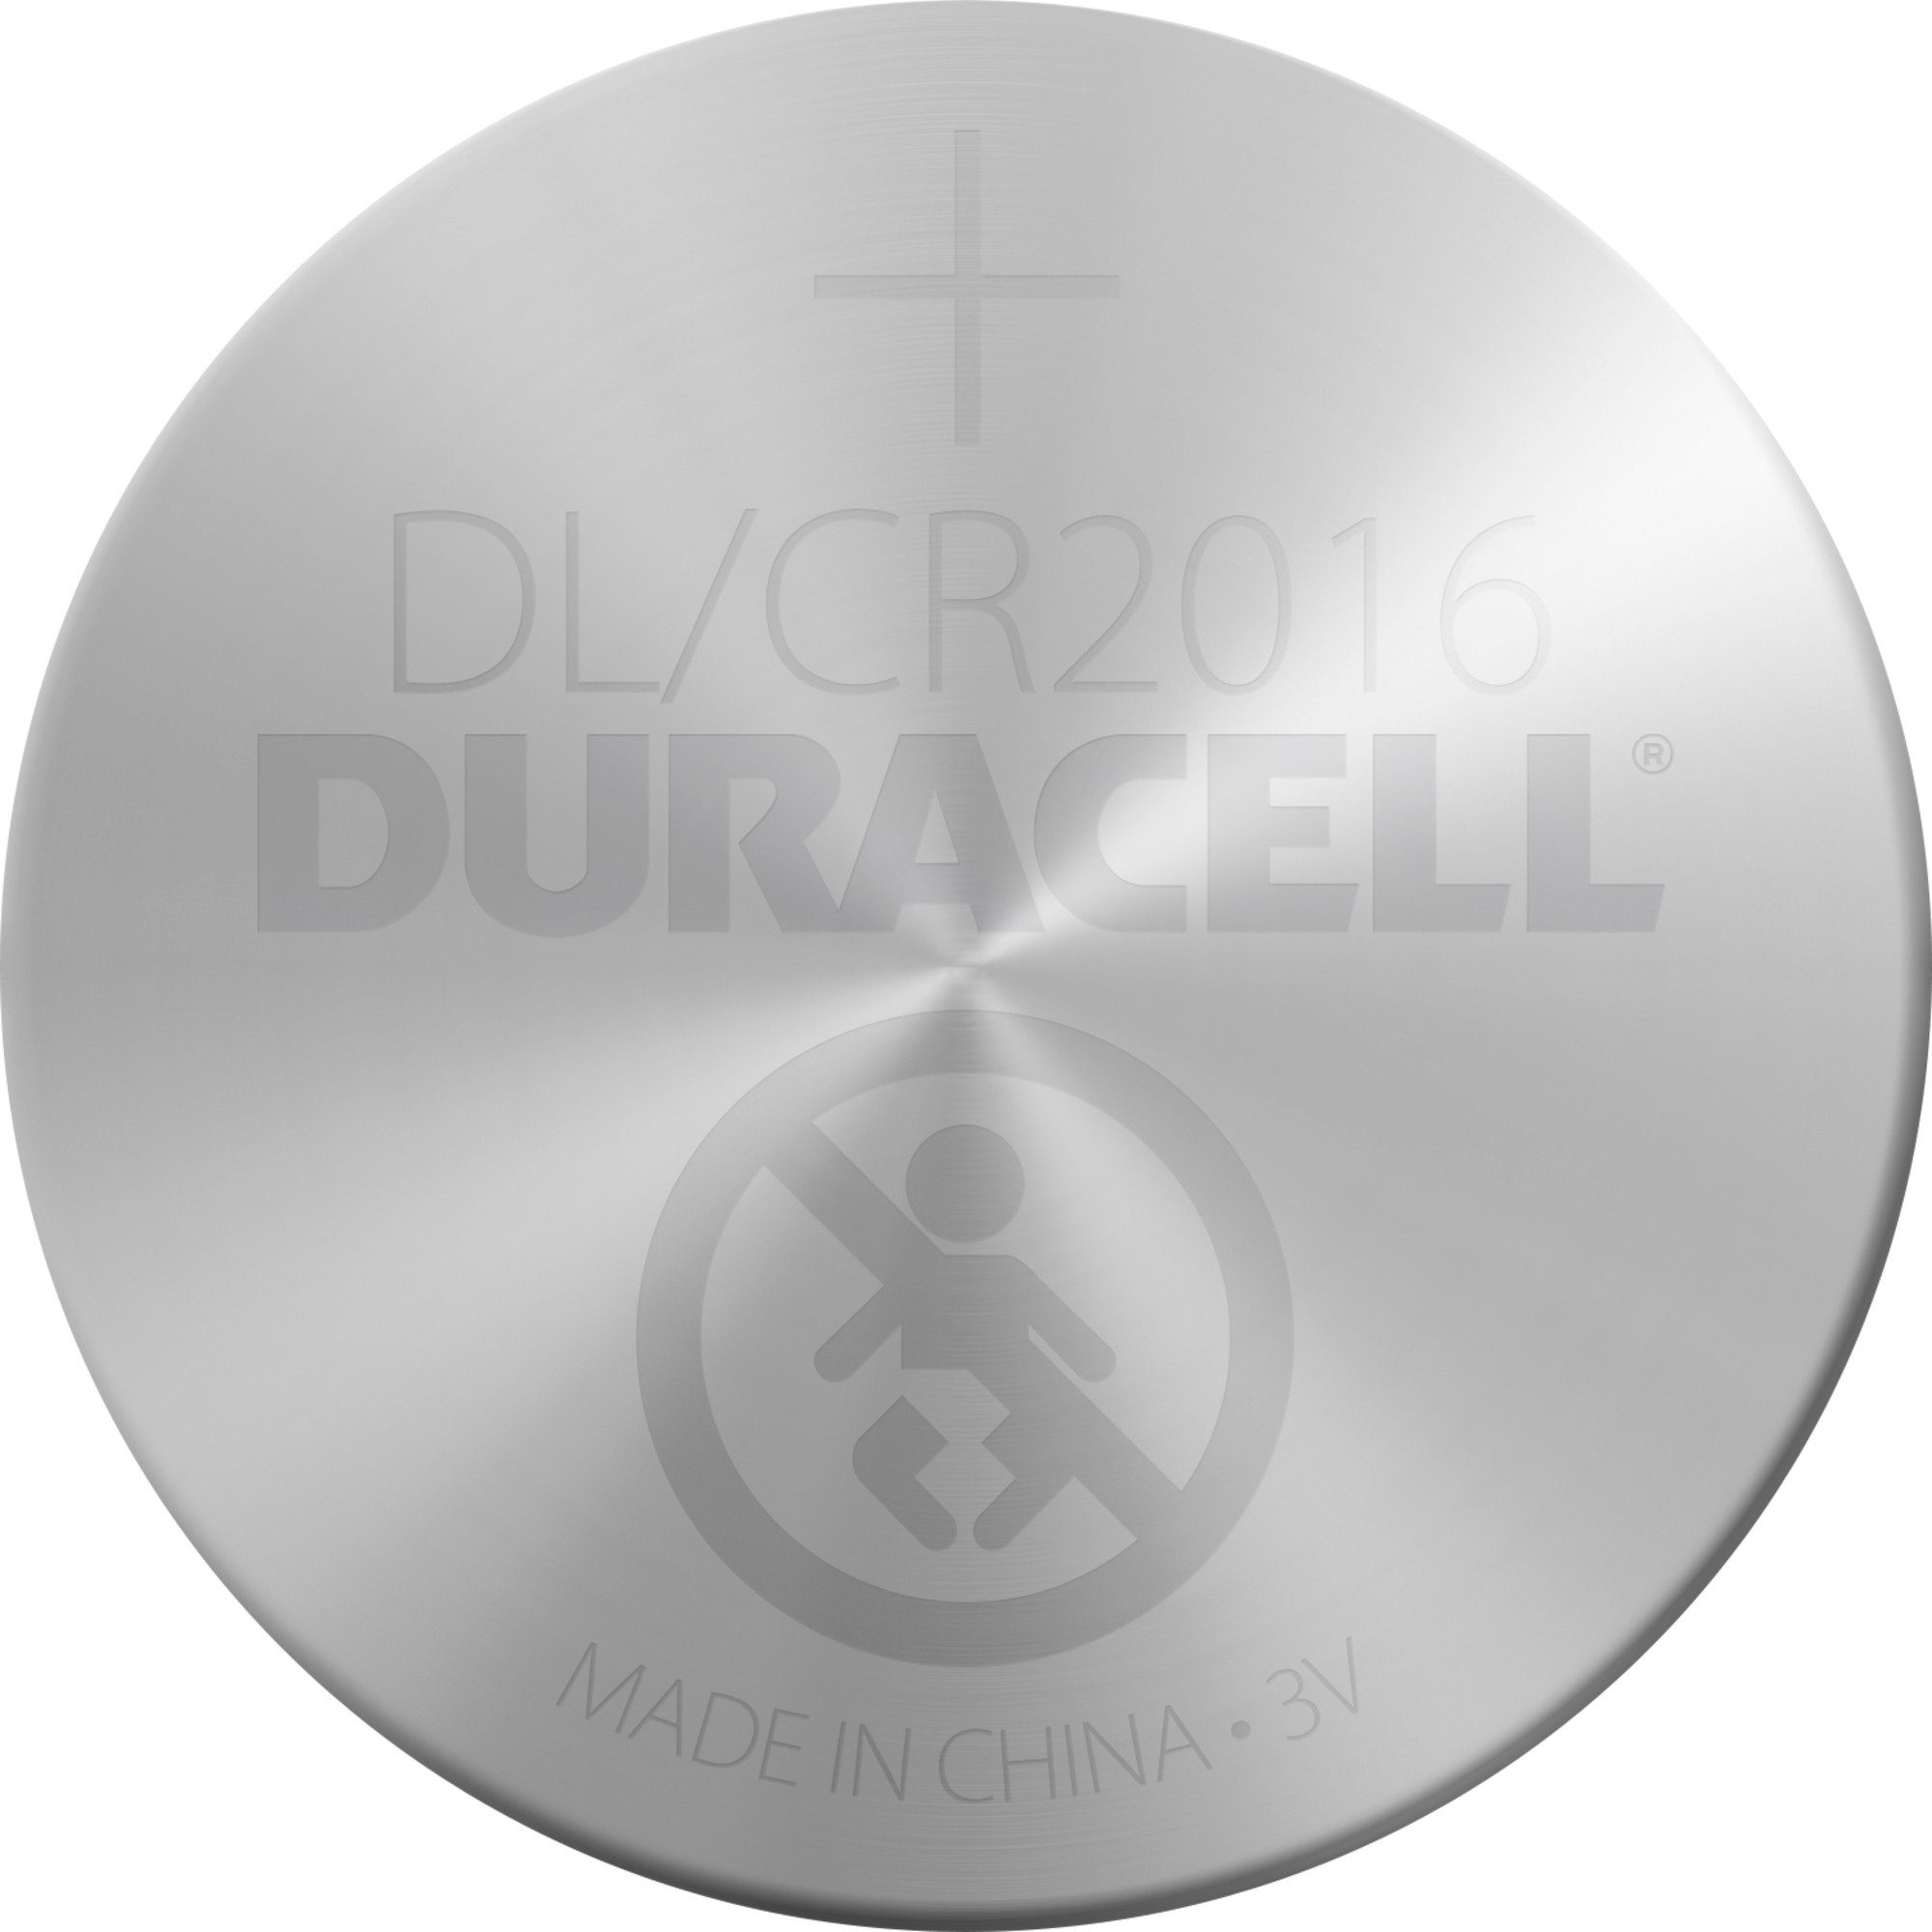 Duracell Duracell CR 2016 Lithium-Knopfzelle Batterie Batterie, 3V